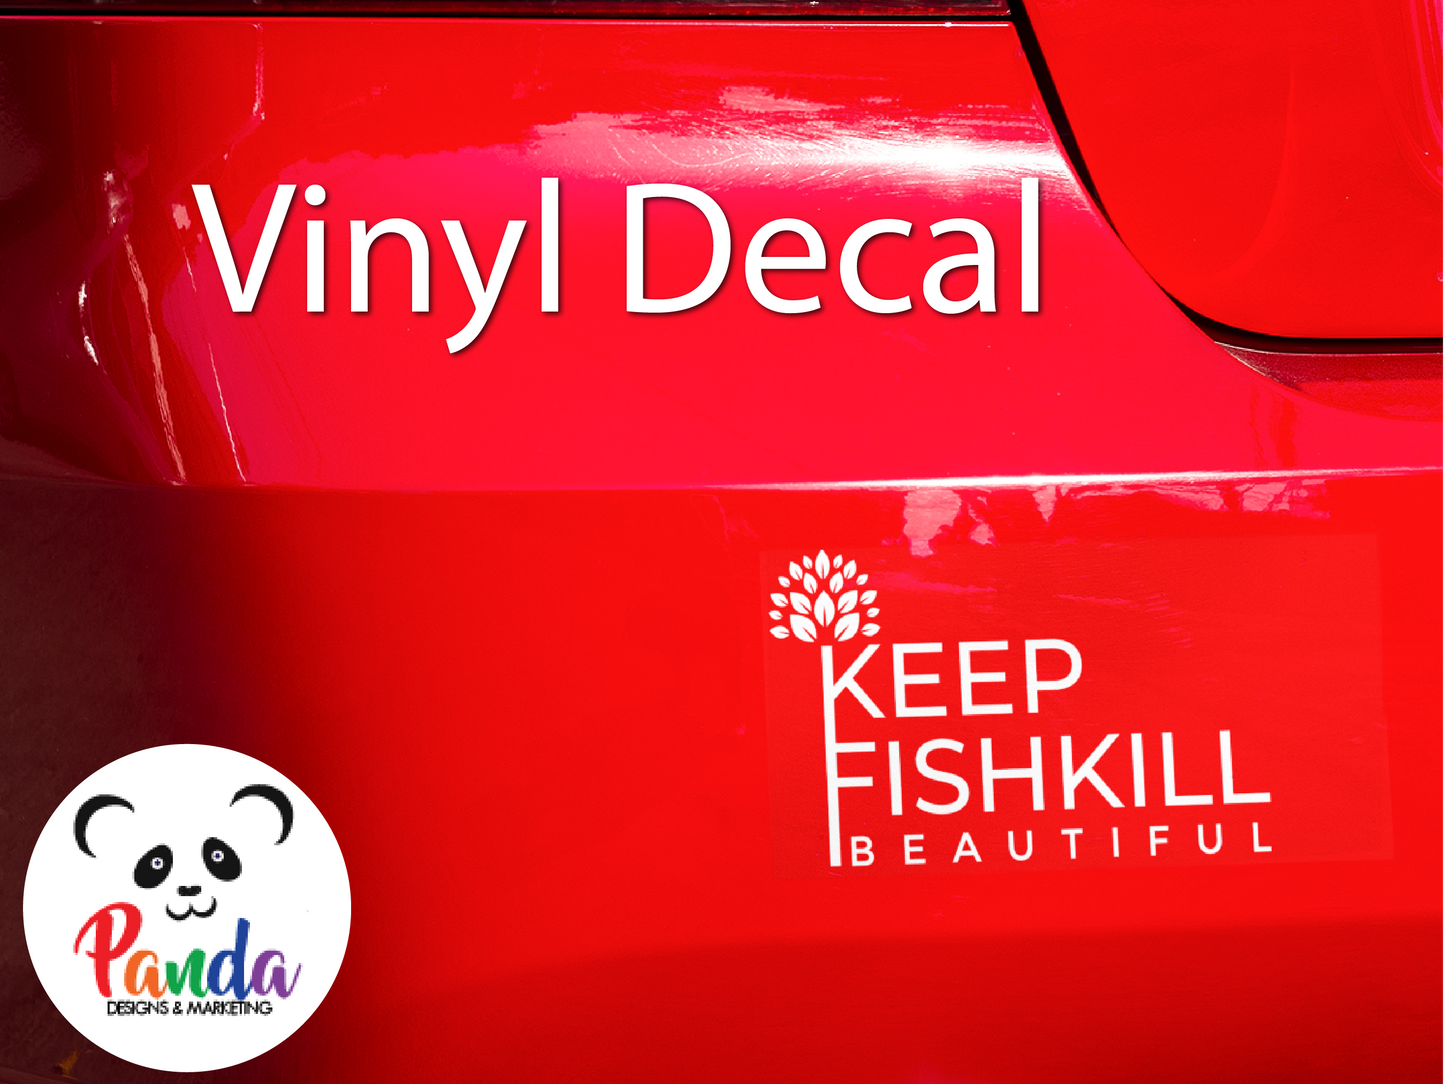 Vinyl Decal - Keep Fishkill Beautiful